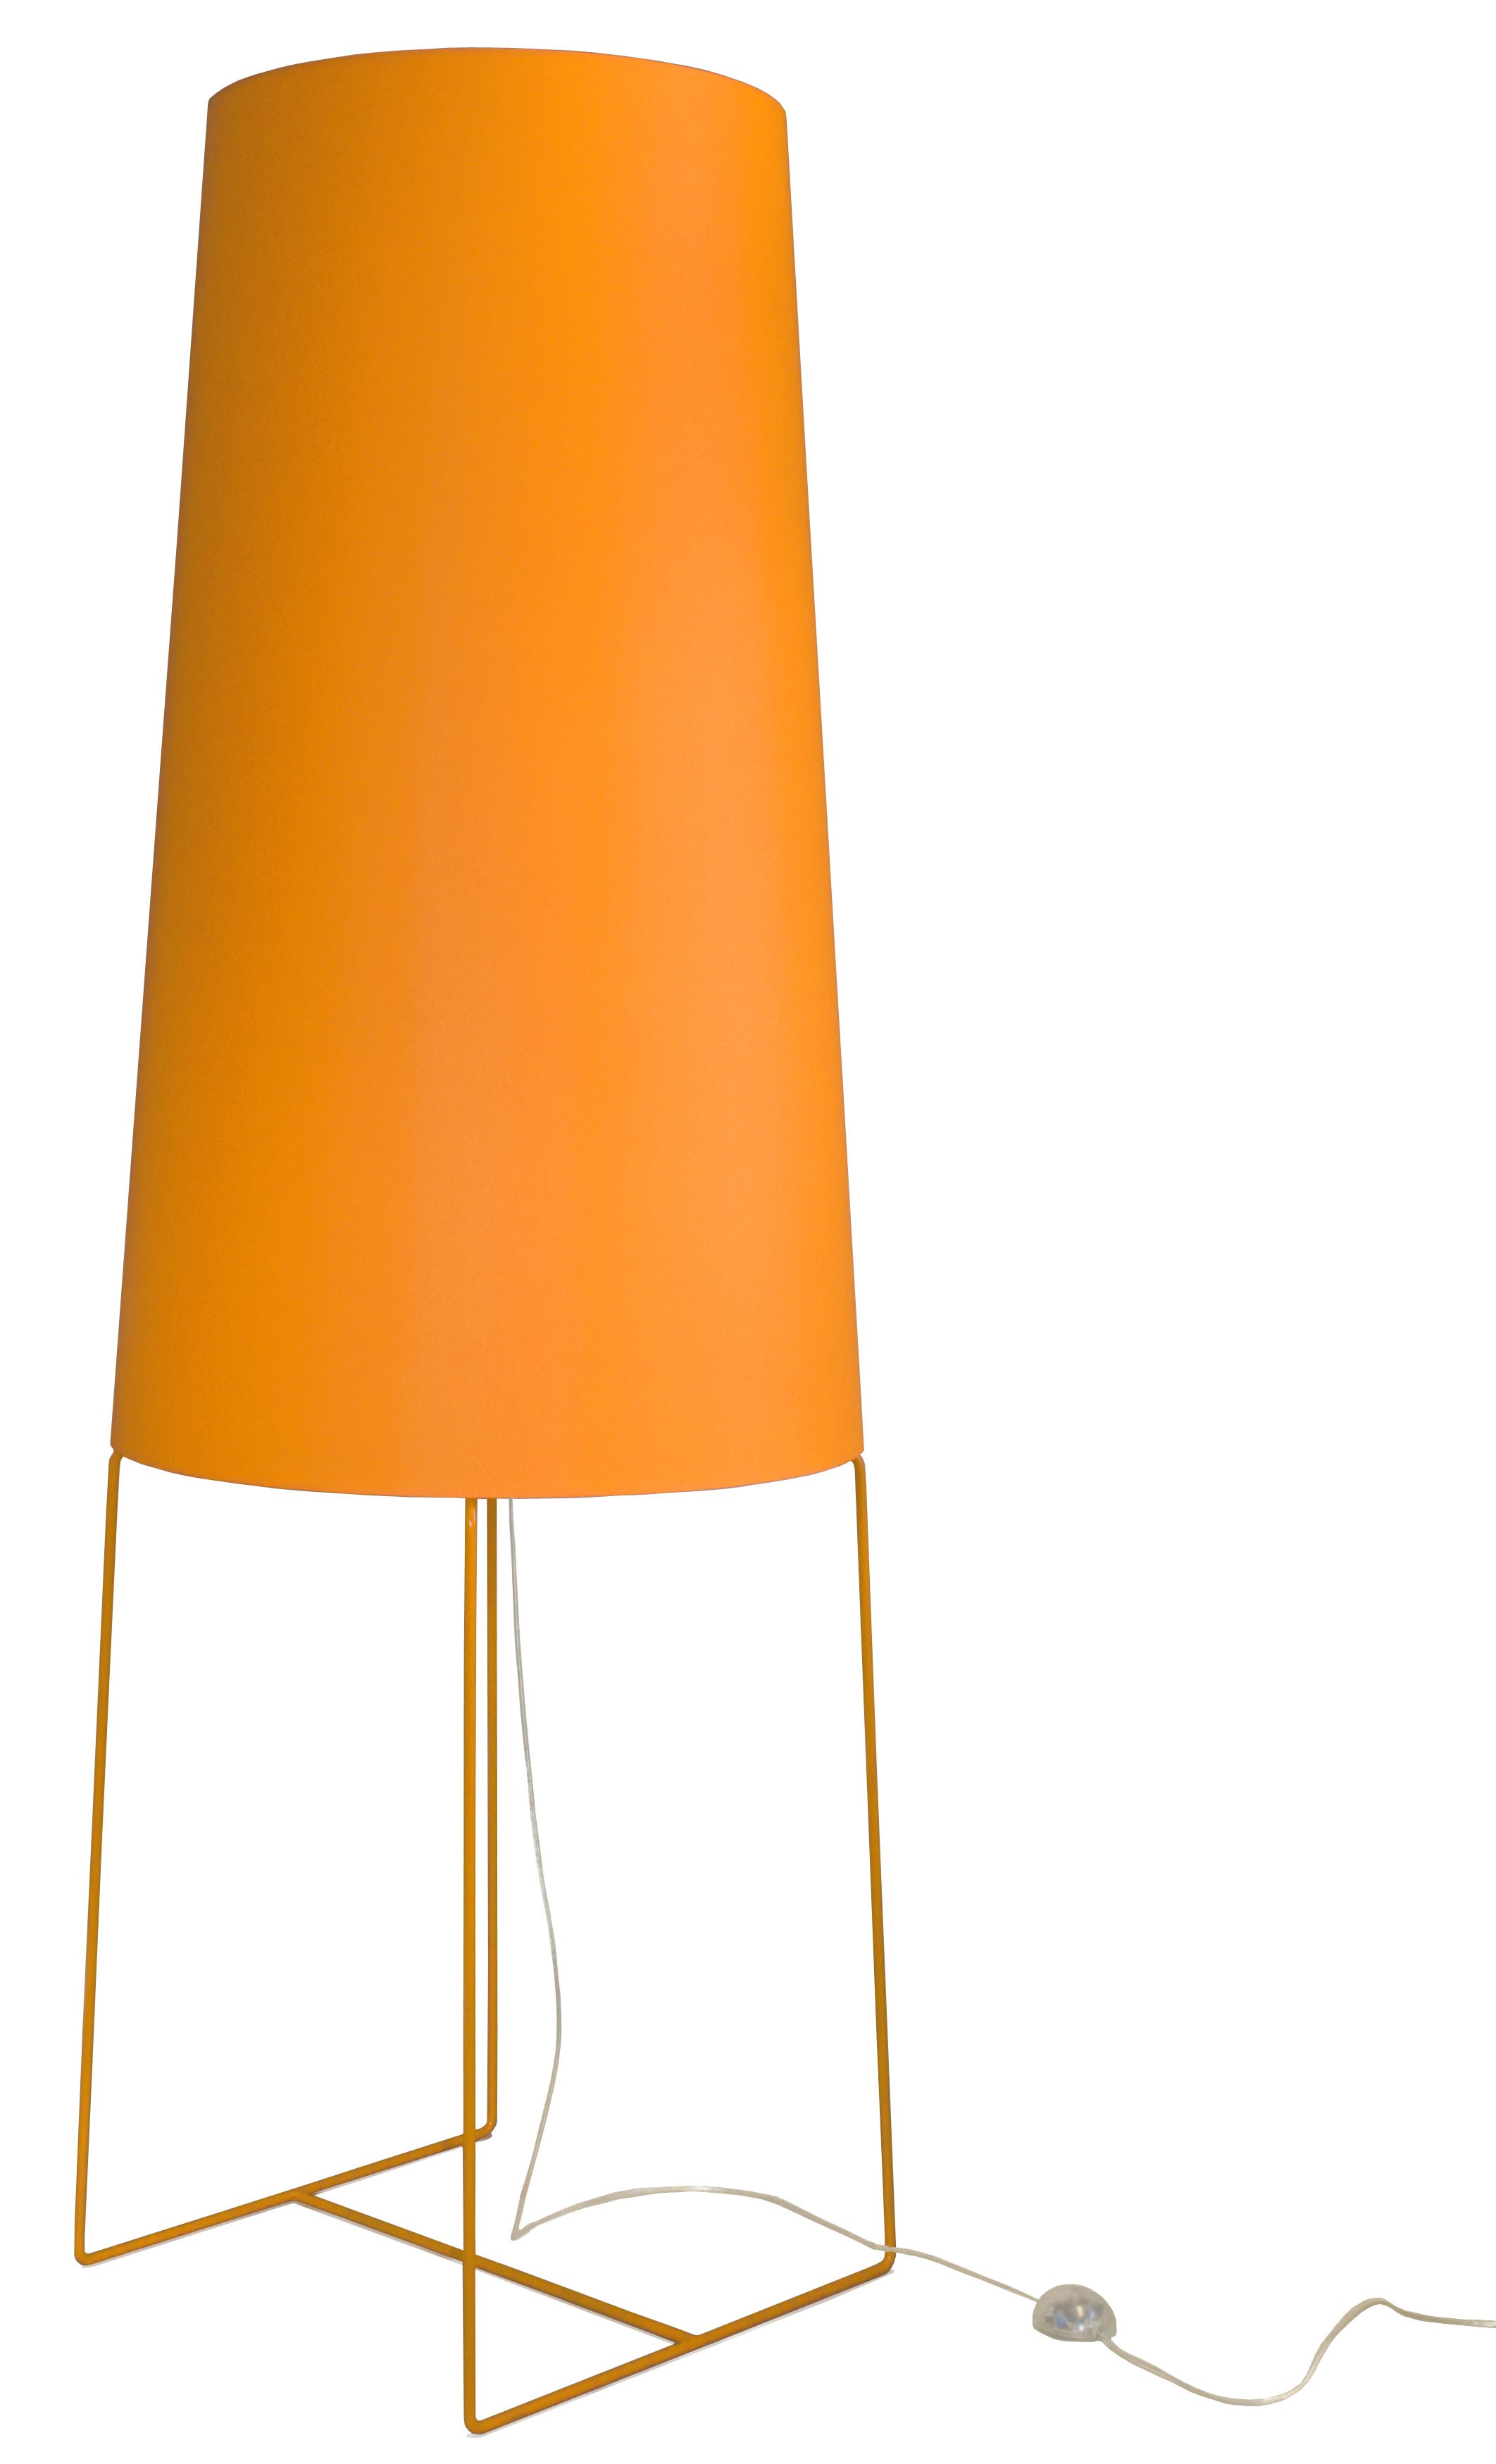 XXL Stehleuchte orange, moderne Stehlampe orange, Stehlampe in fünf verschiedenen Farben